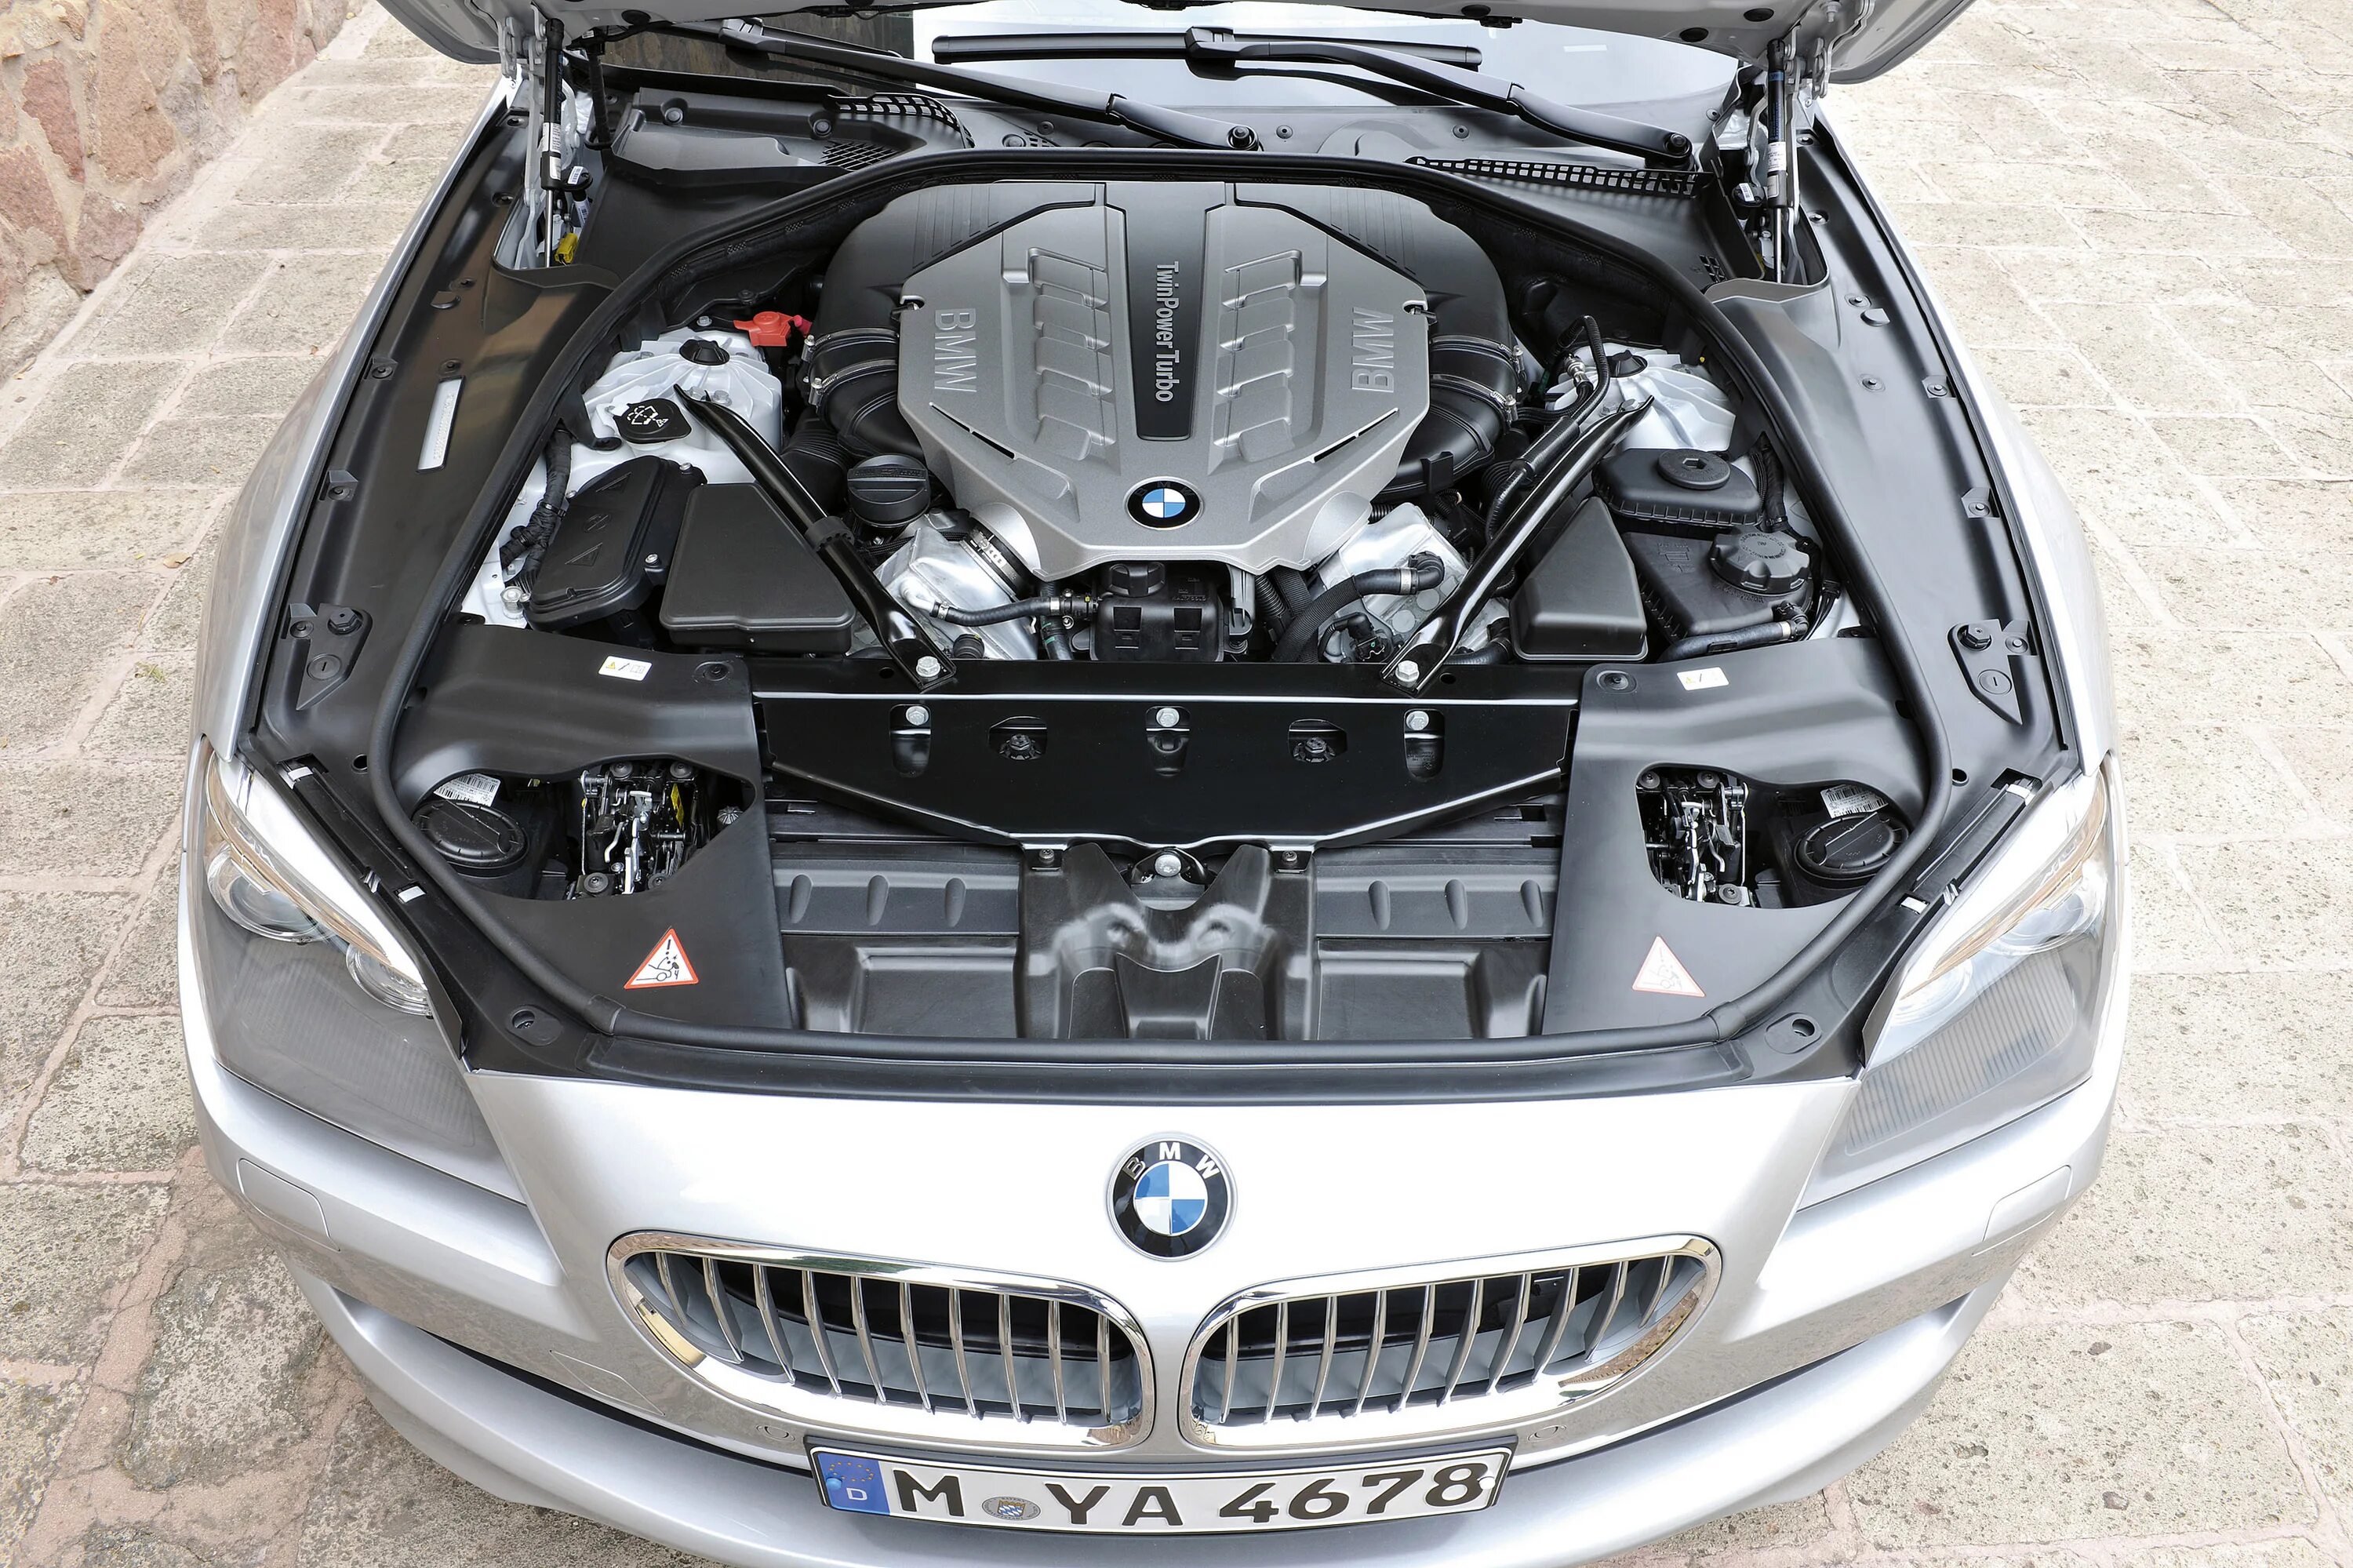 Открыть капот автомобиля. Двигатель BMW 650i. БМВ 650 f06 мотор. BMW f02 под капот. BMW 650i под капотом.